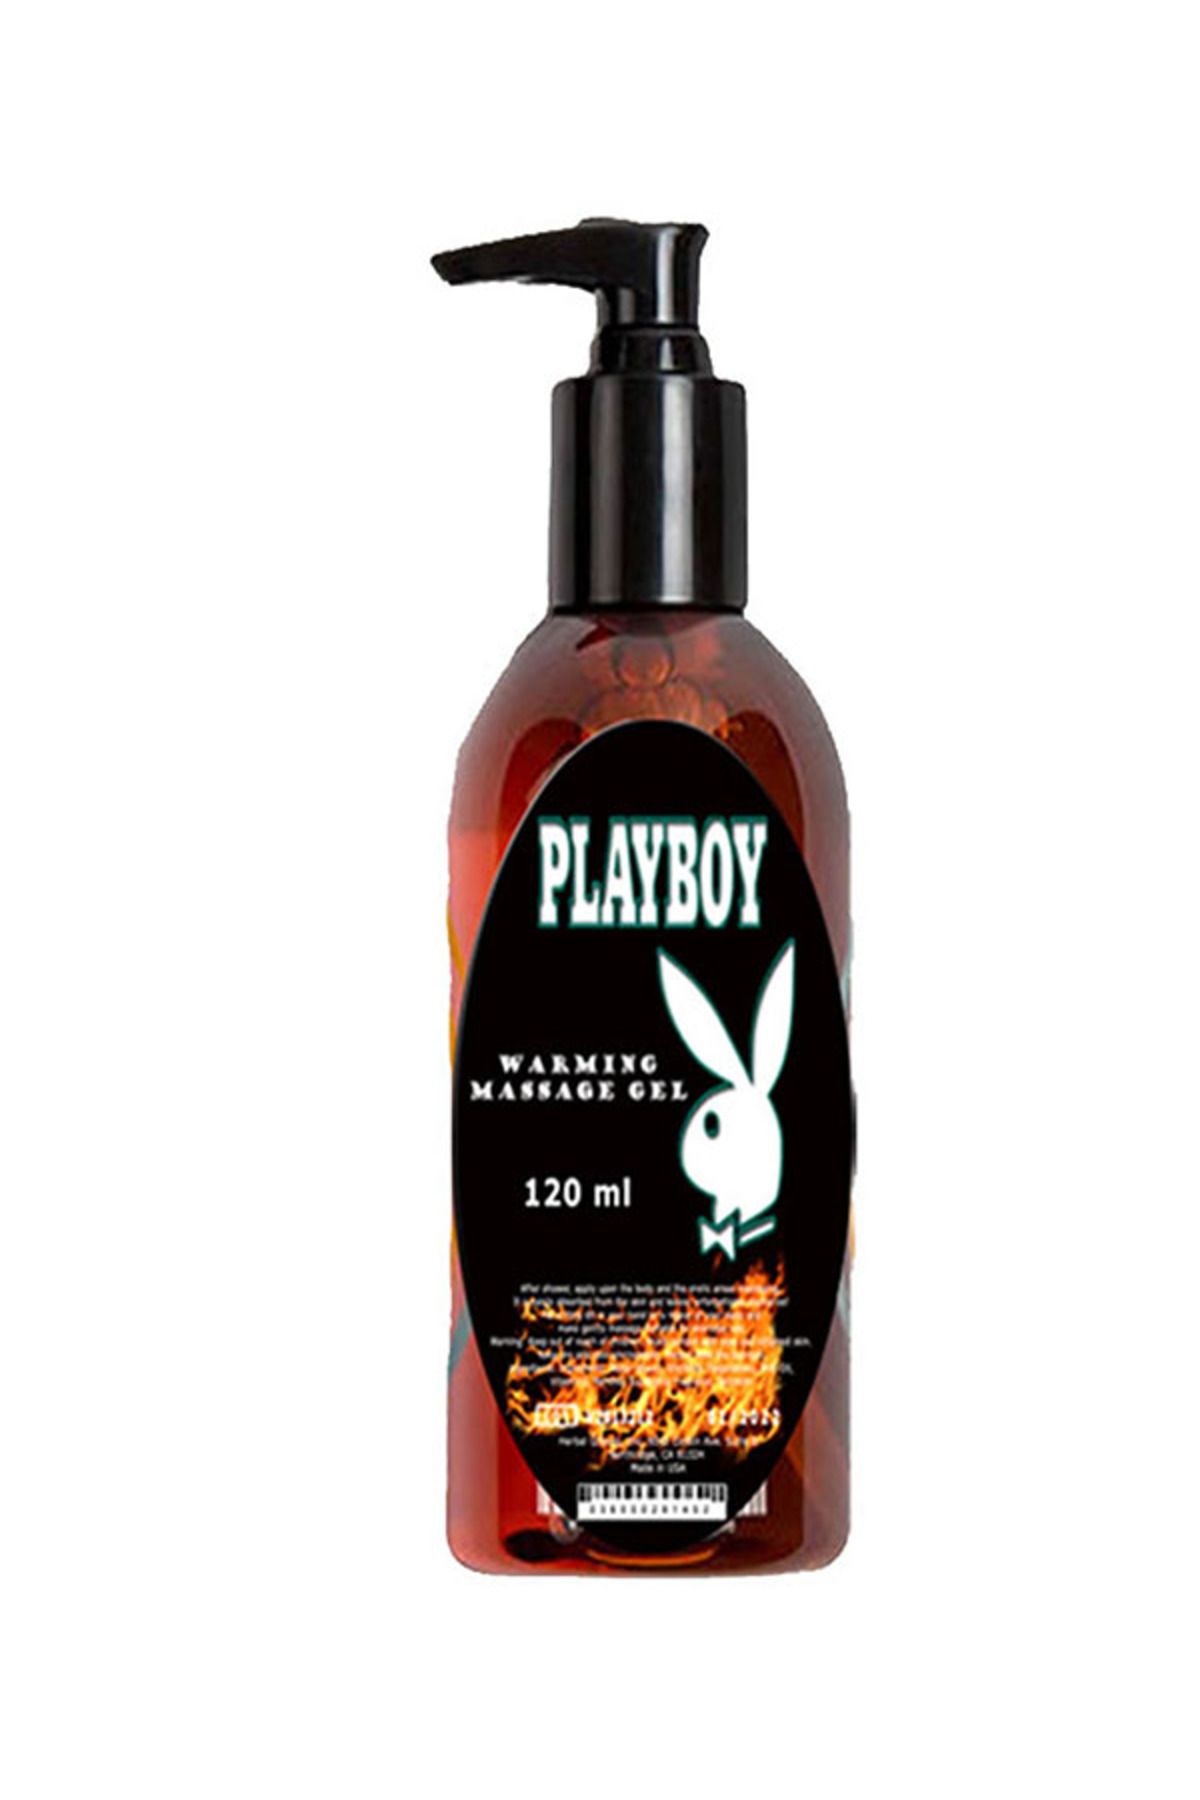 Playboy Isıtıcılı Masaj Yağı / Warming Massage Oil 120ml X 1 ad